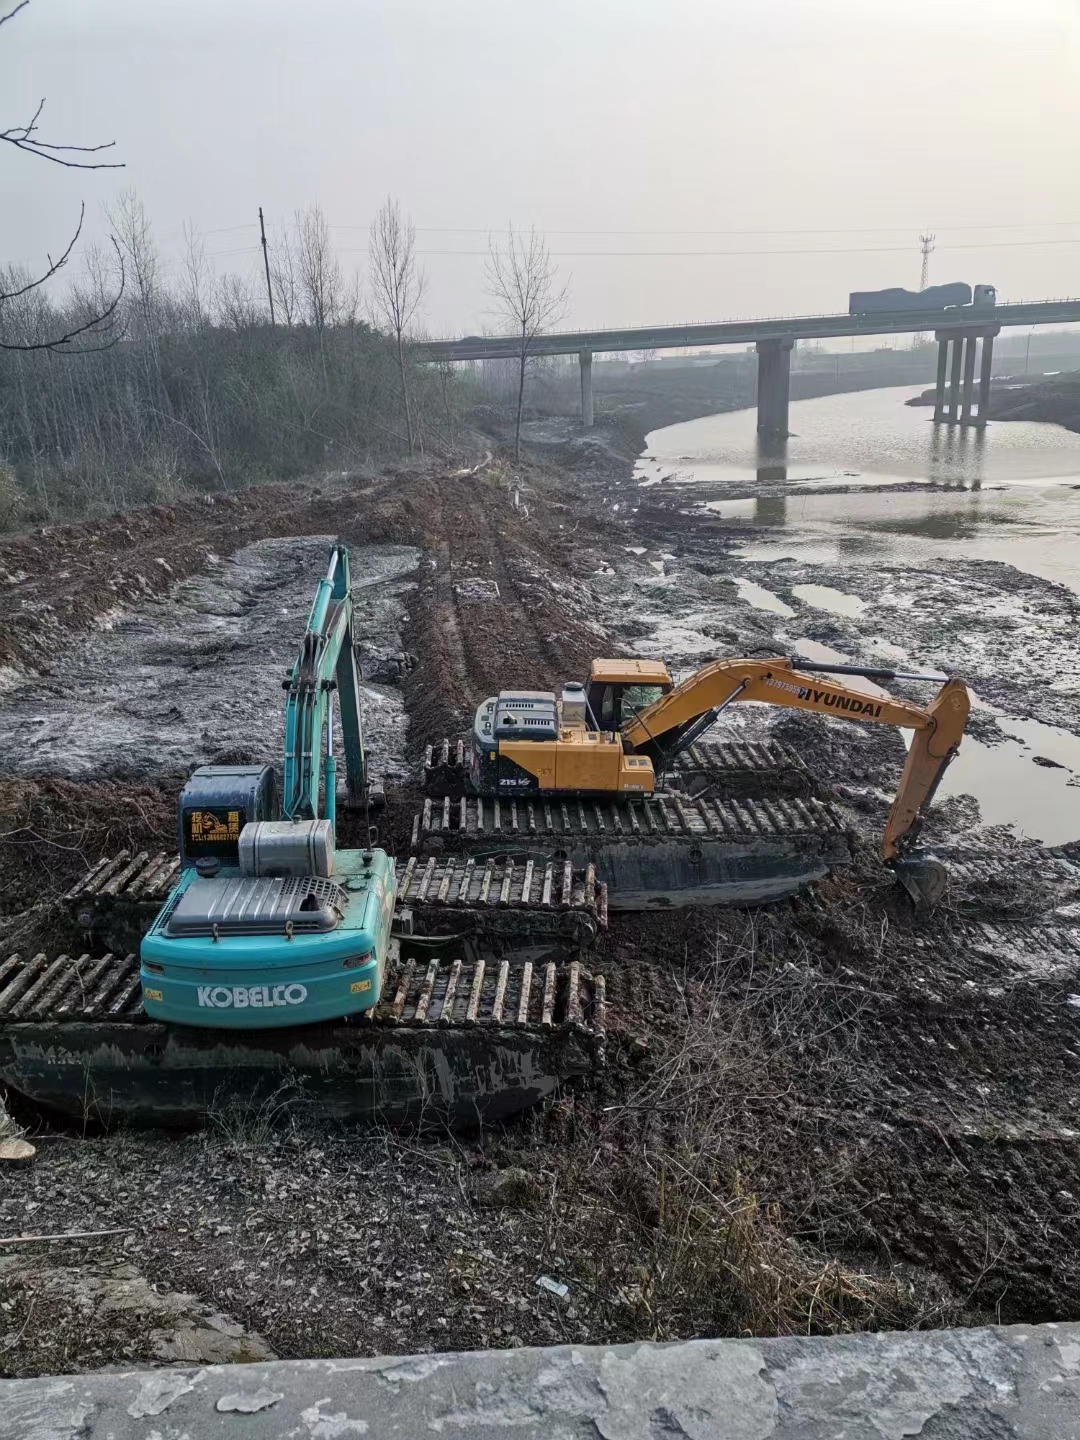 沧州水陆挖机出租机构清淤,水陆两用挖机出租一站式服务